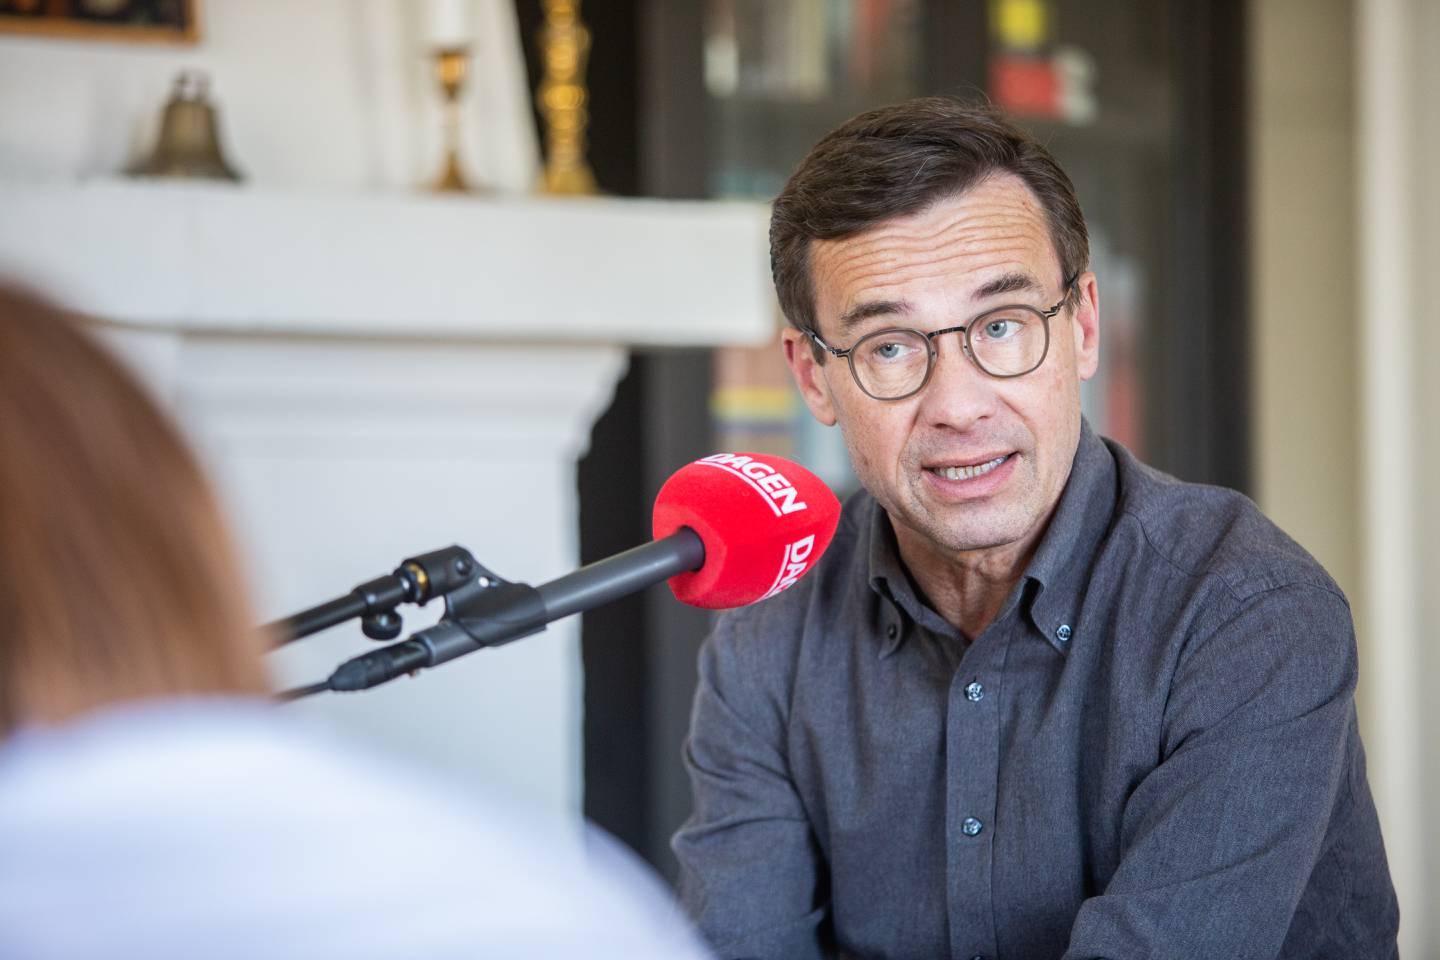 Moderaternas partiledare Ulf Kristersson intervjuas av Malin Aronsson och Daniel Wistrand för podcasten Dagens Människa. Intervjun skedde i Kristerssons hem i Strängnäs.